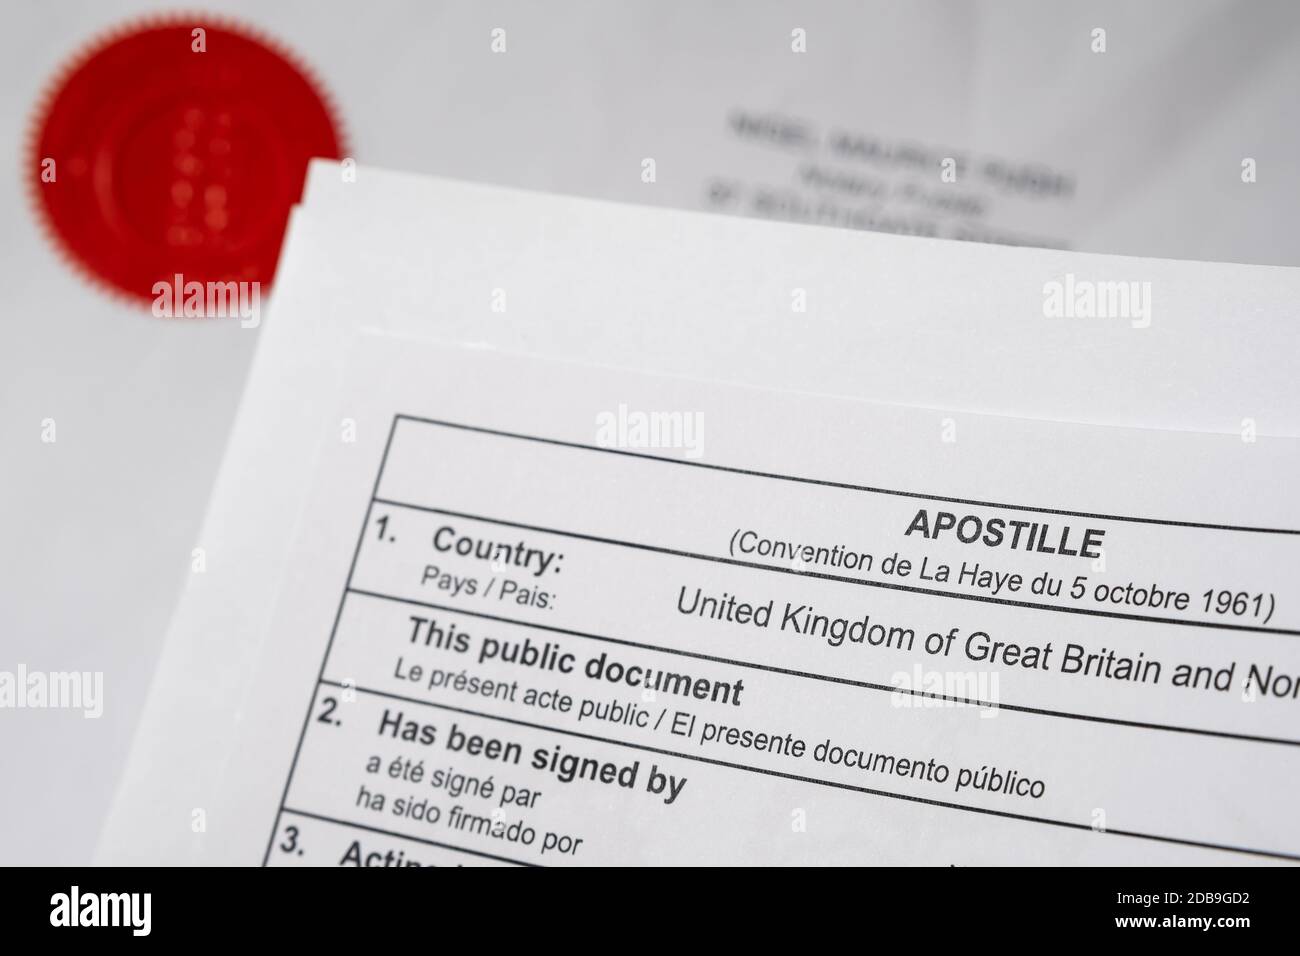 UK Apostille Urkunde Ecke und roten Notar öffentlichen Stempel auf offiziellem Dokument auf dem verschwommenen Hintergrund gesehen. Stockfoto